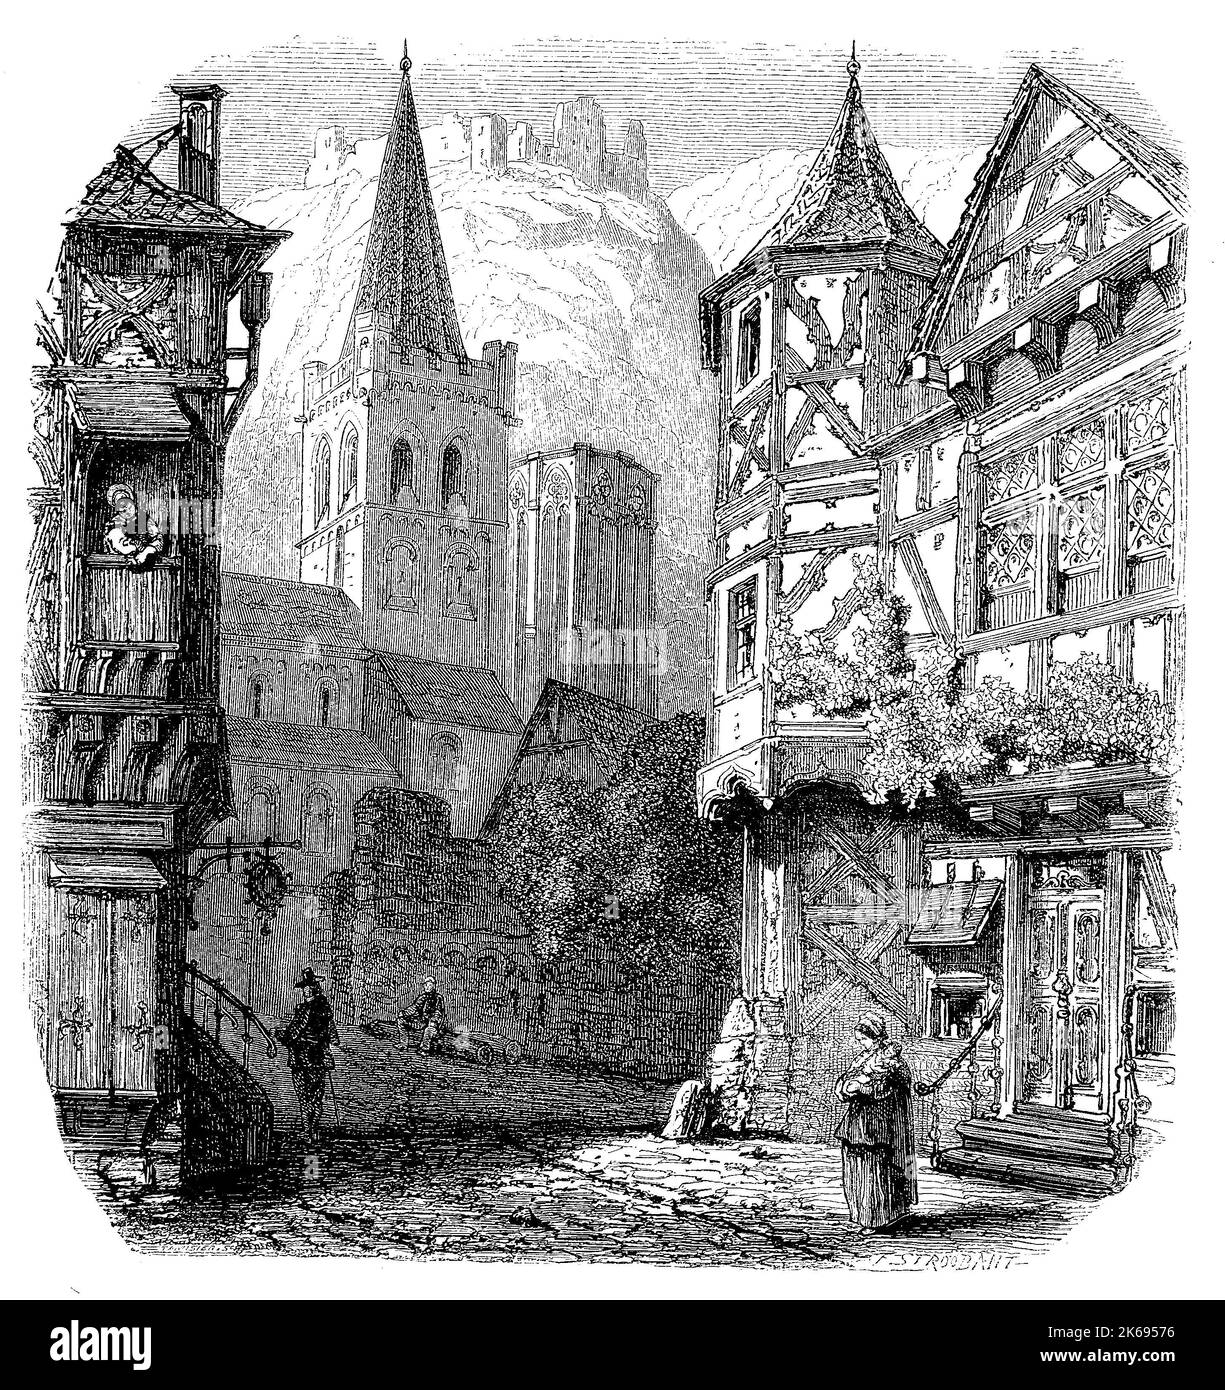 L'amélioration de la reproduction numérique, Bacharach, une ville dans le district de Mayence-bingen en Rhénanie-Palatinat, Allemagne, woodprint original du 19ème siècle e Banque D'Images